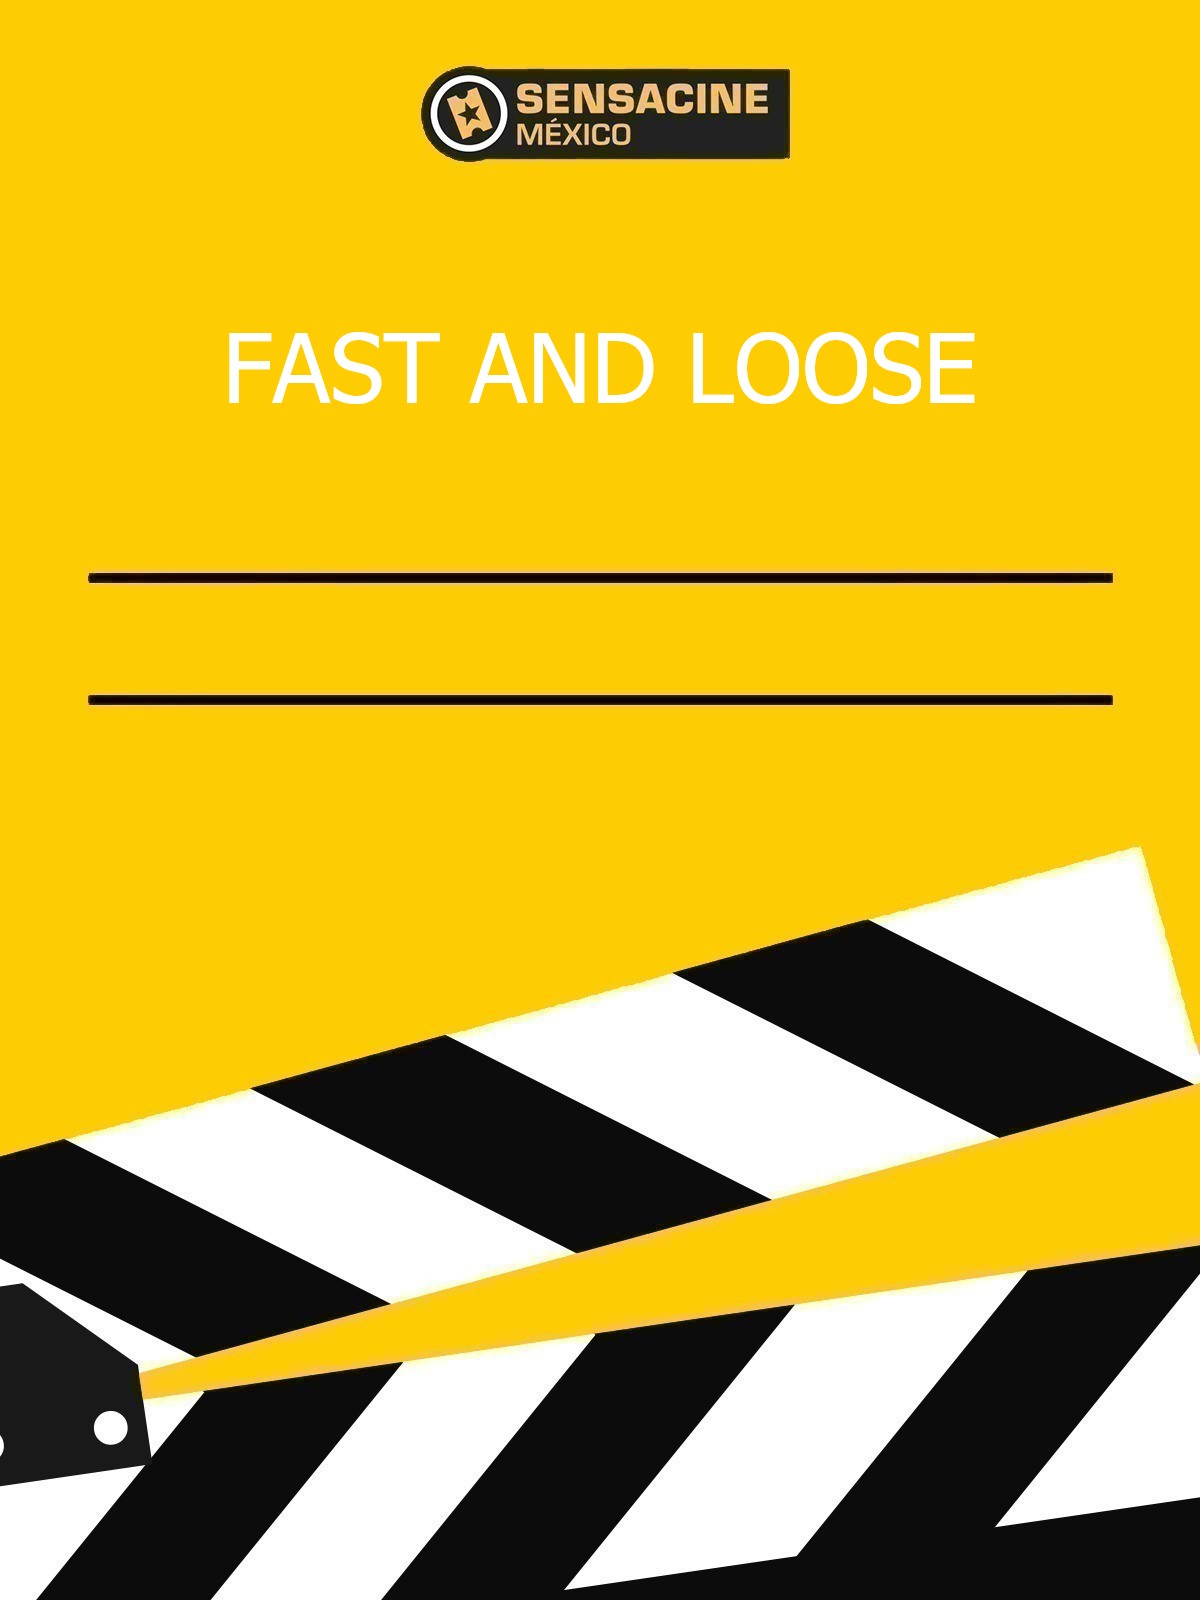 Fast & Loose